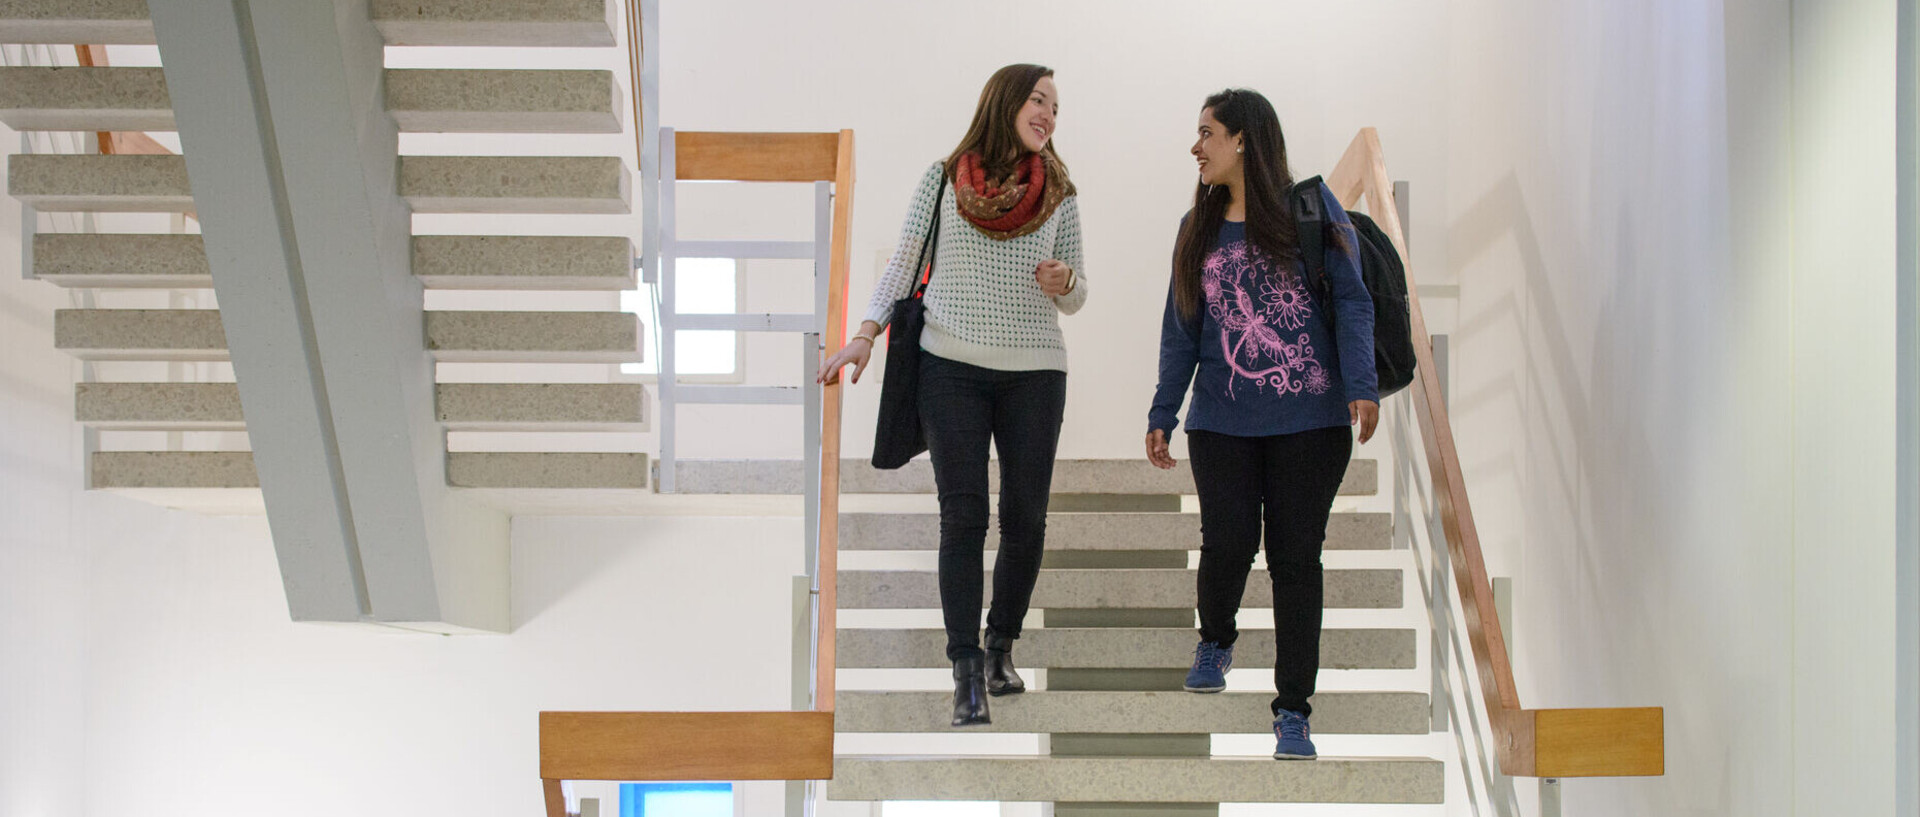 Zwei Studierende kommen eine Treppe hinunter.